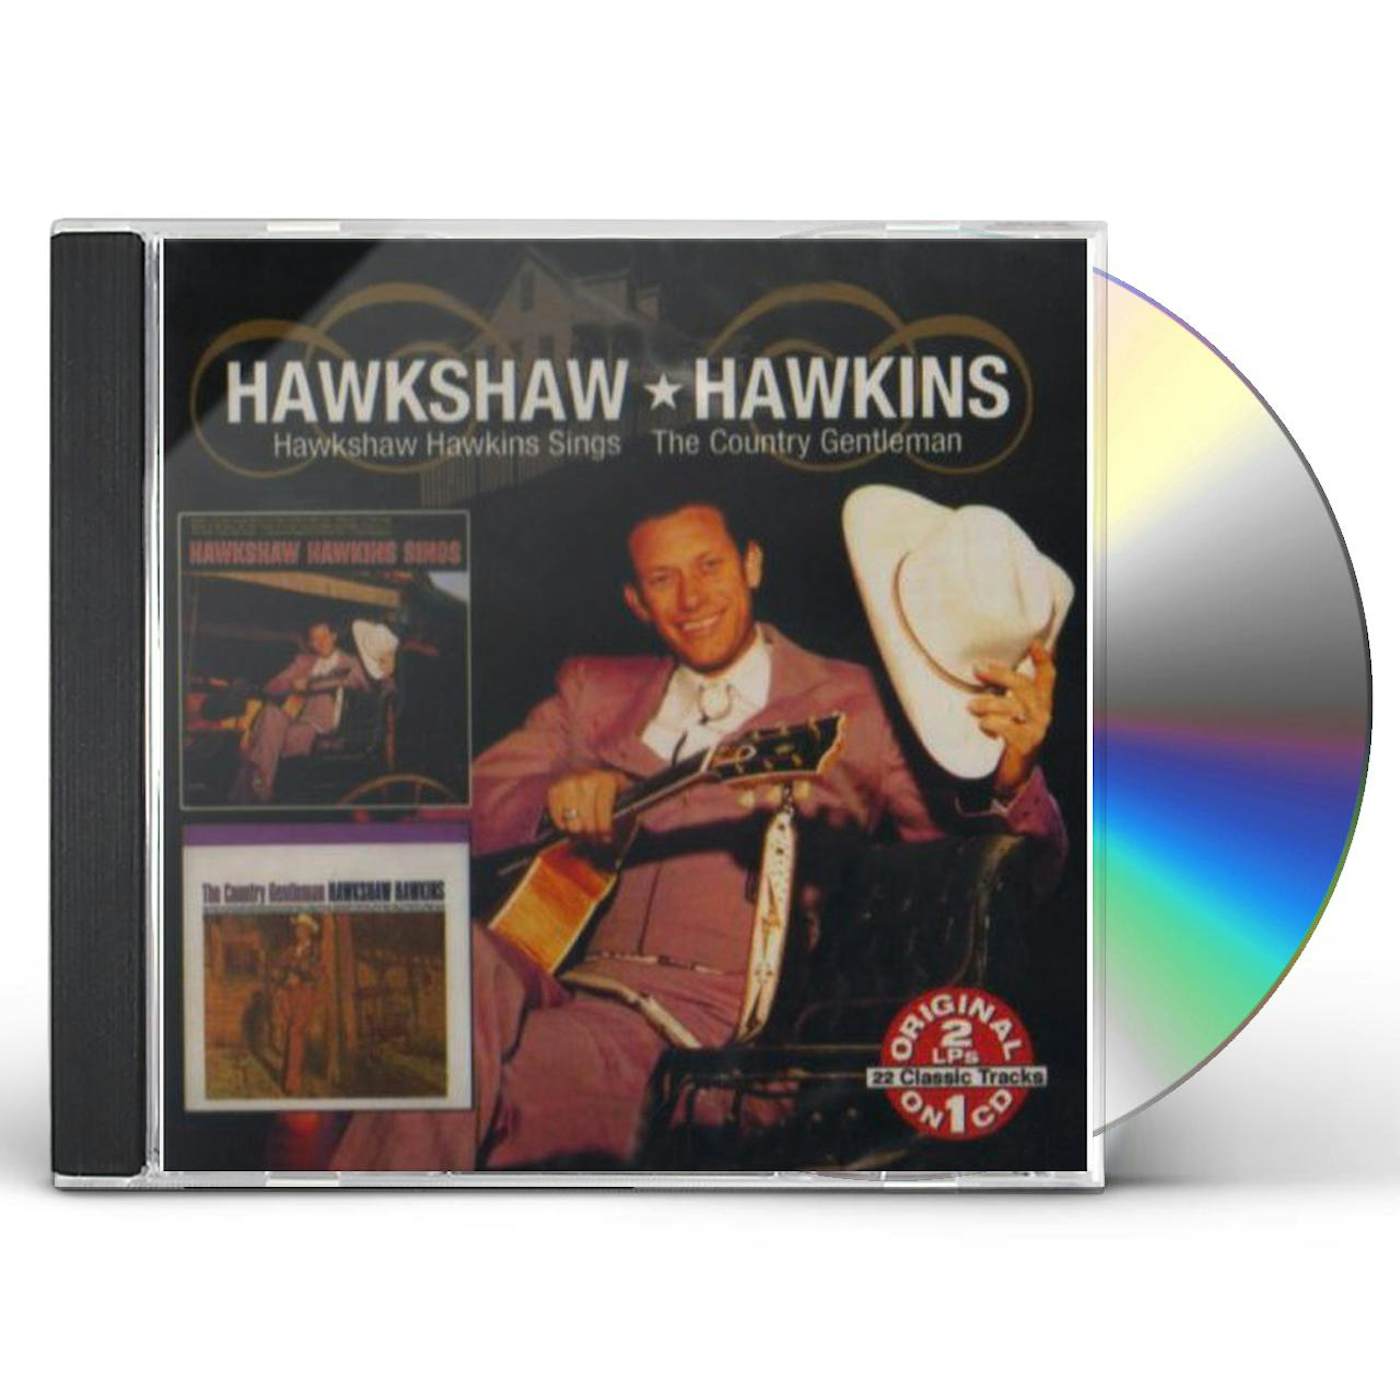 COUNTRY GENTLEMAN: HAWKSHAW HAWKINS SINGS CD